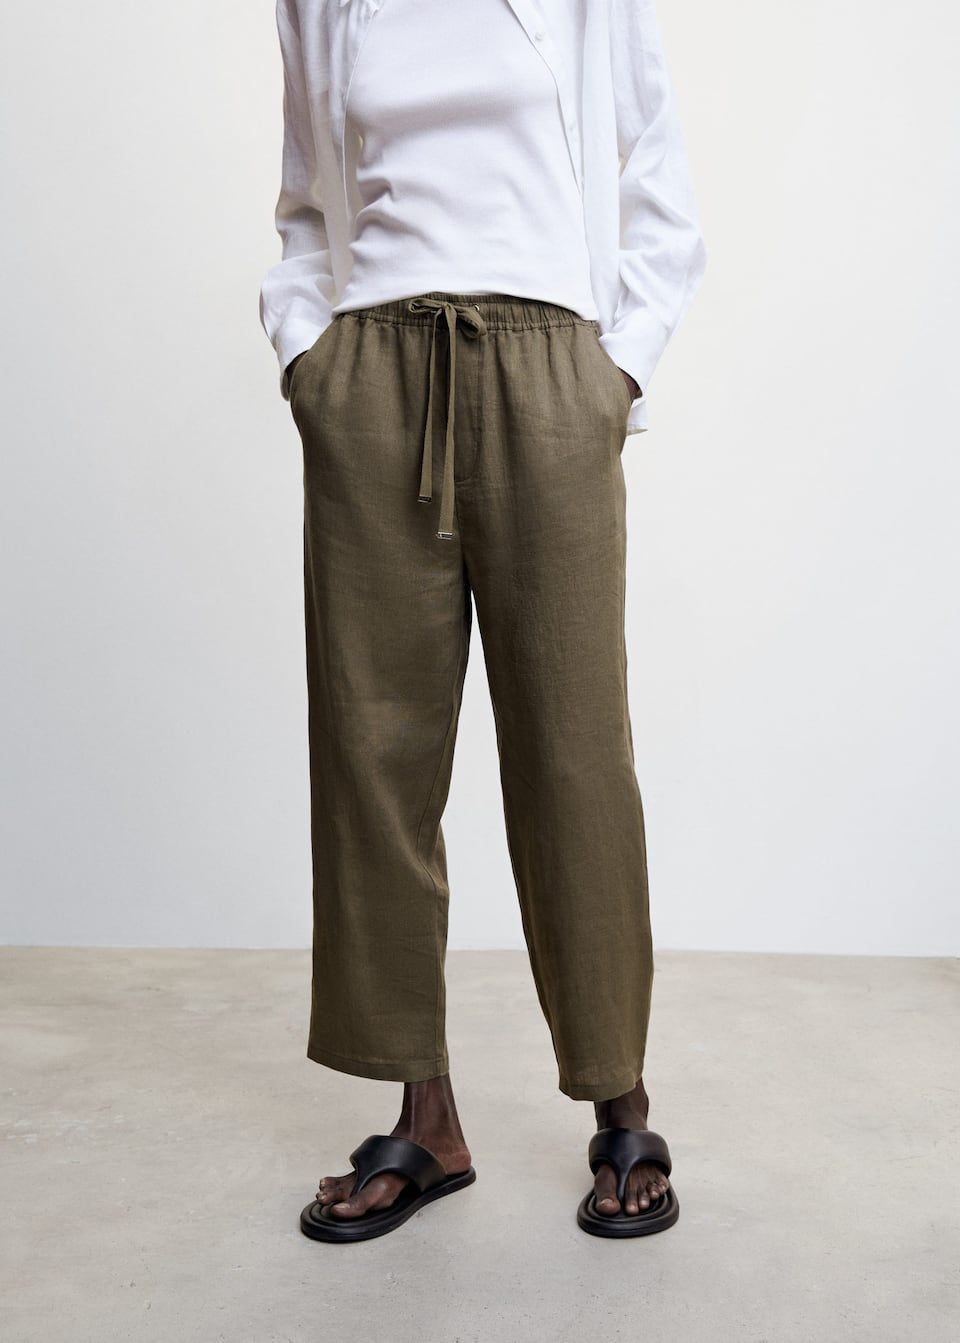 100% Linen men's trousers – La Bottega degli Intrecci